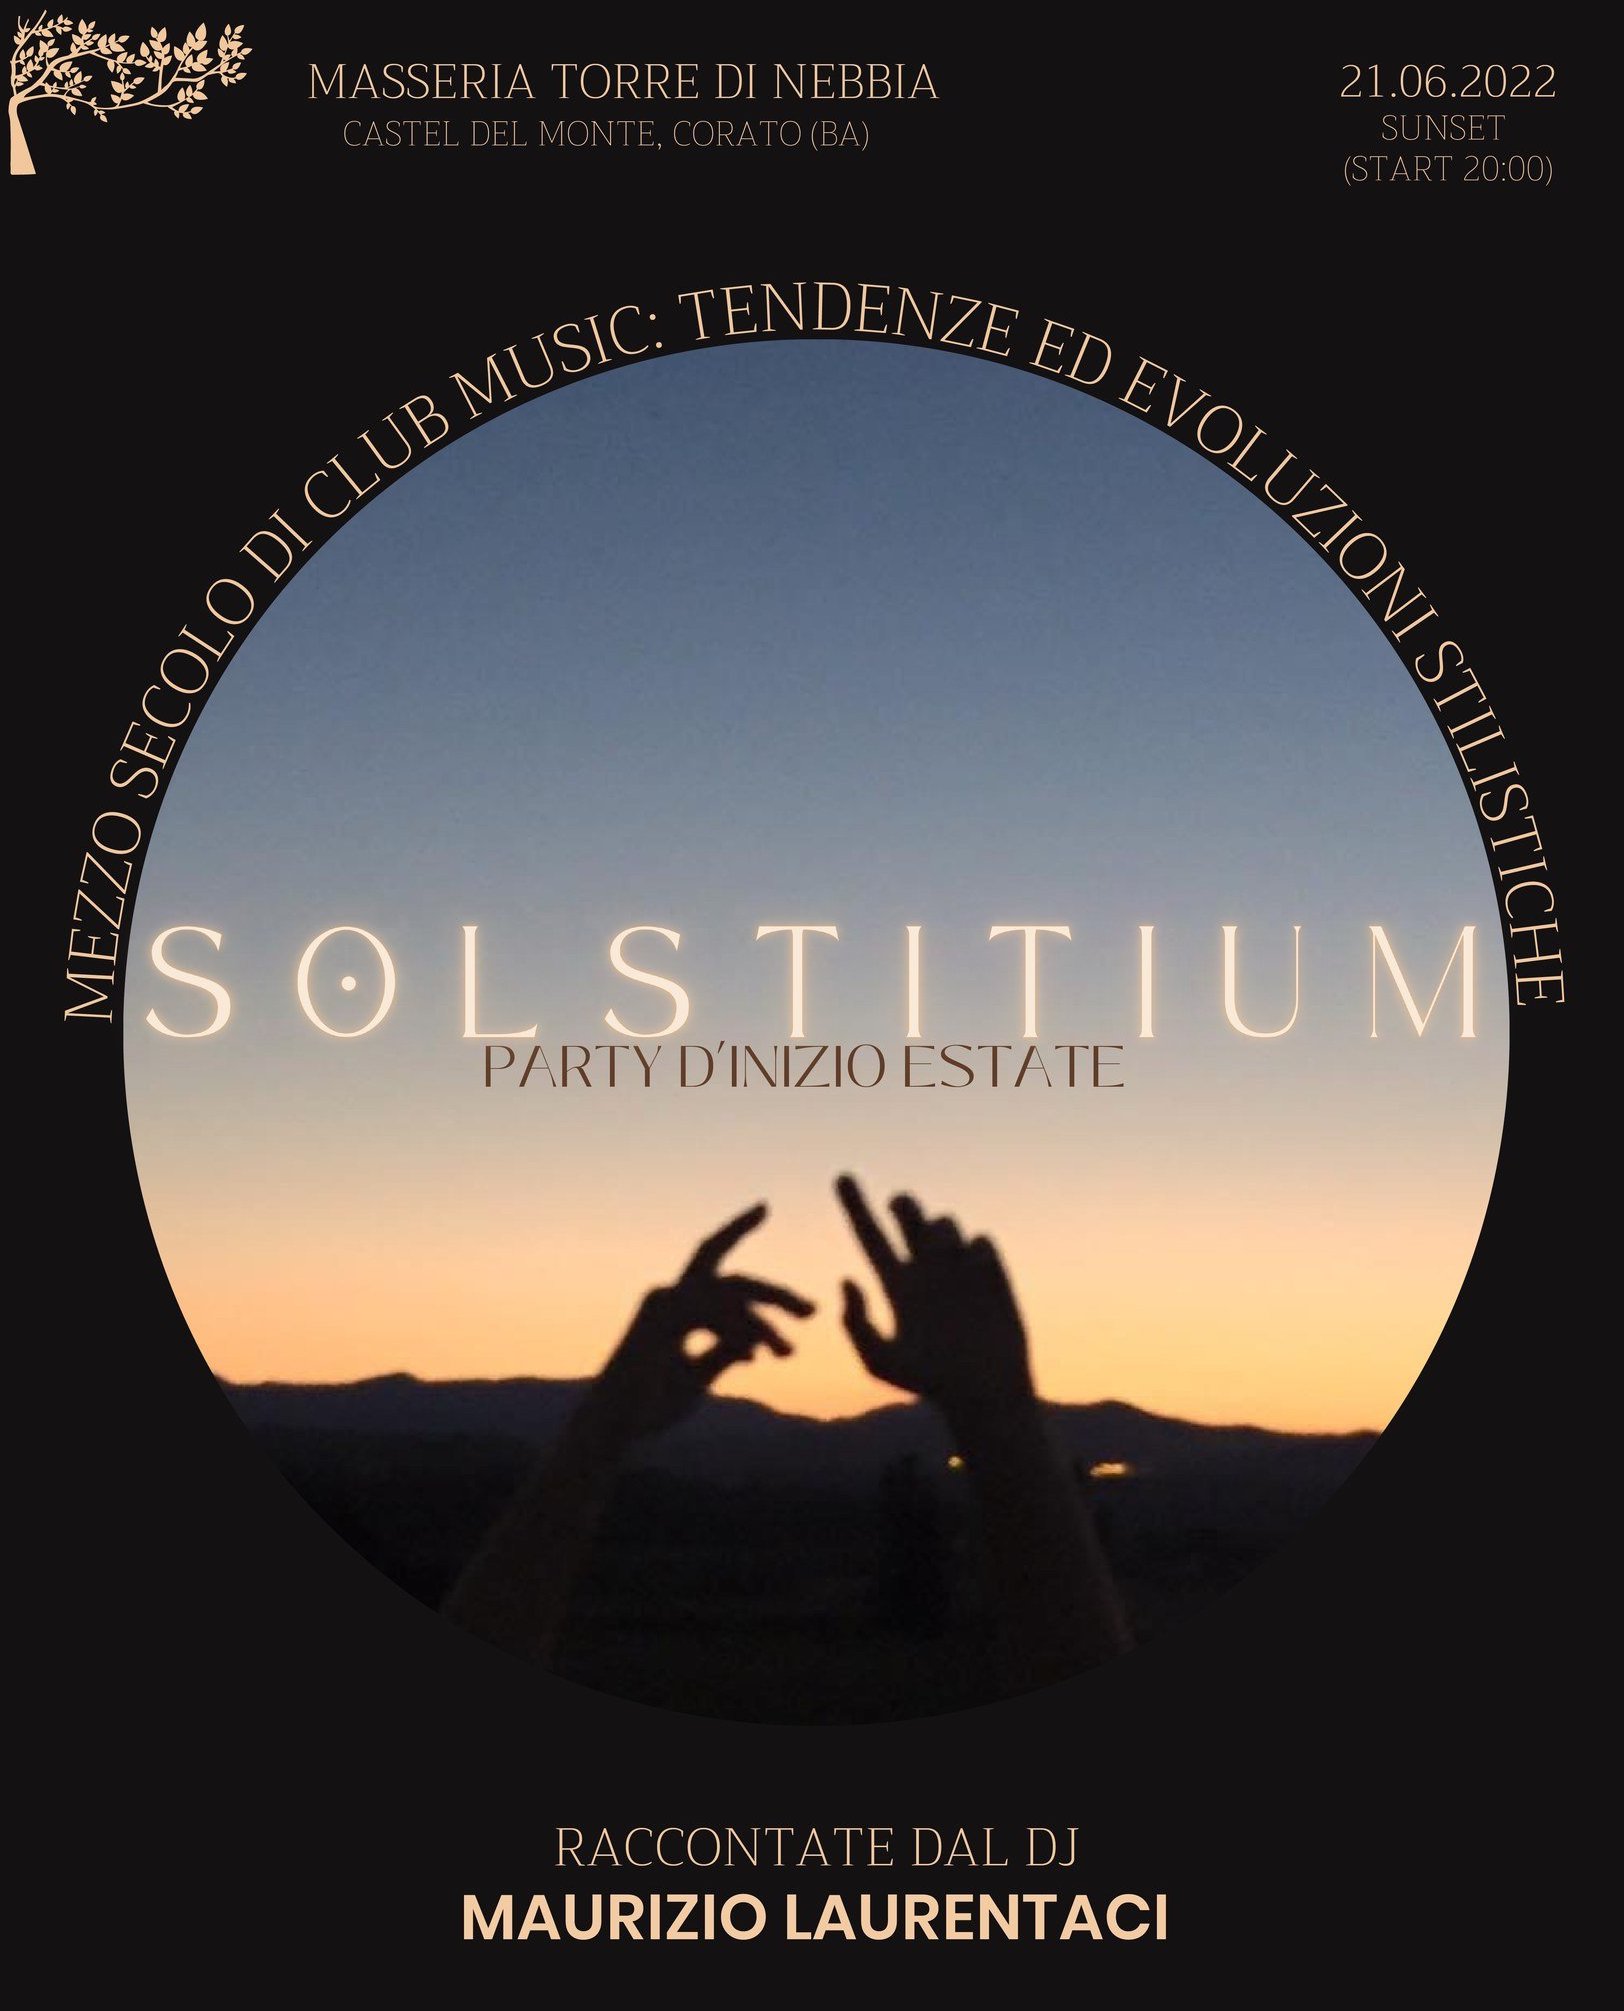 Solstitium - Party d'inizio estate 